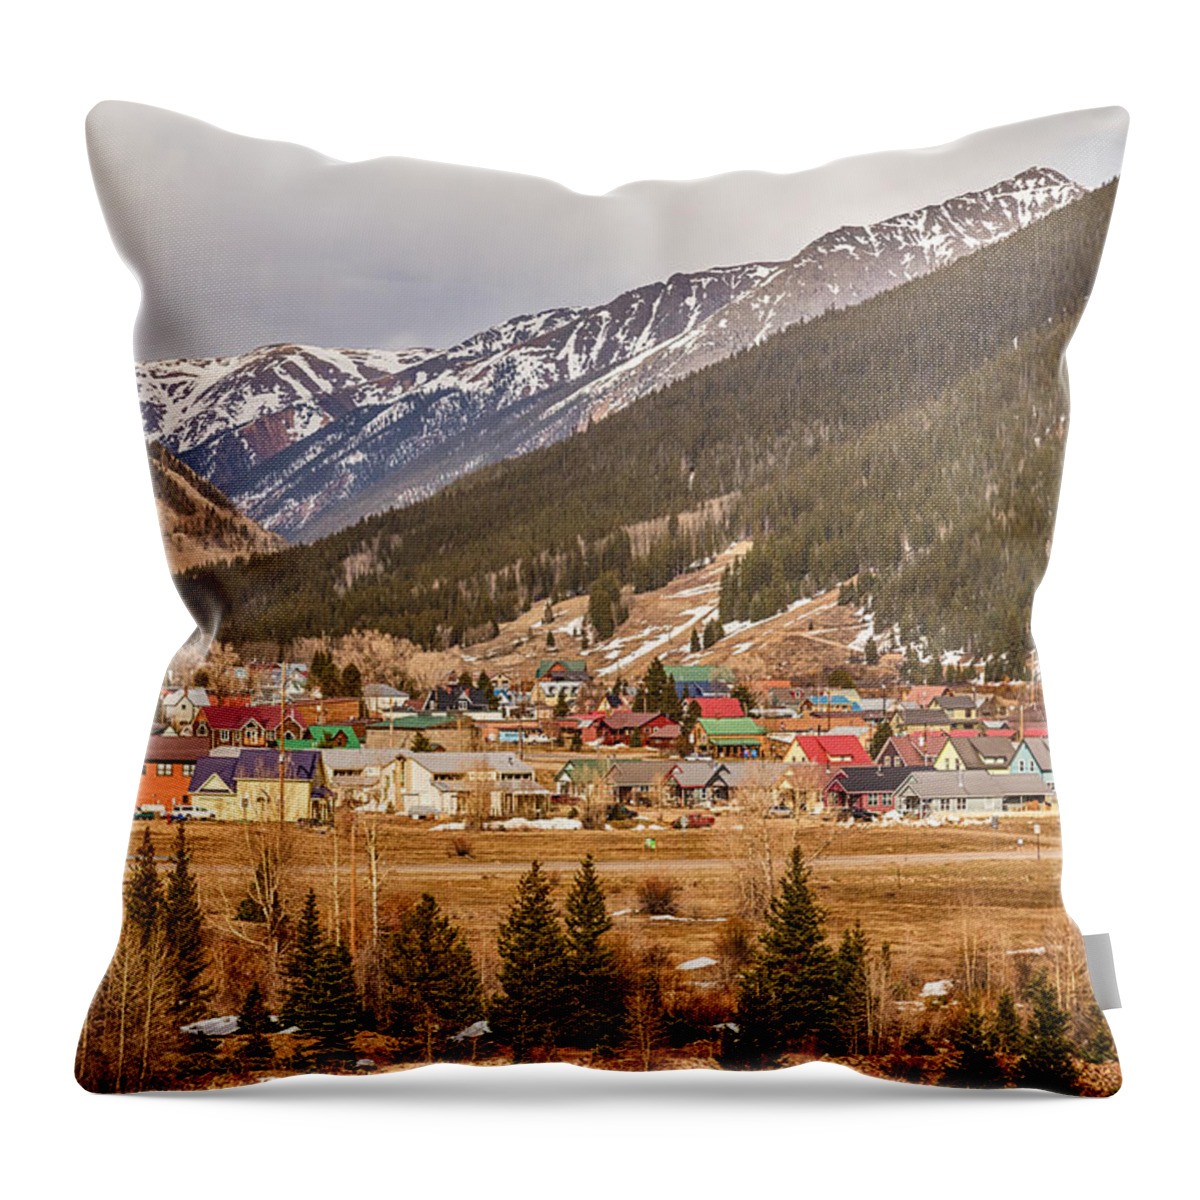 Colorado Throw Pillow featuring the photograph Beautiful Silverton Colorado by James BO Insogna